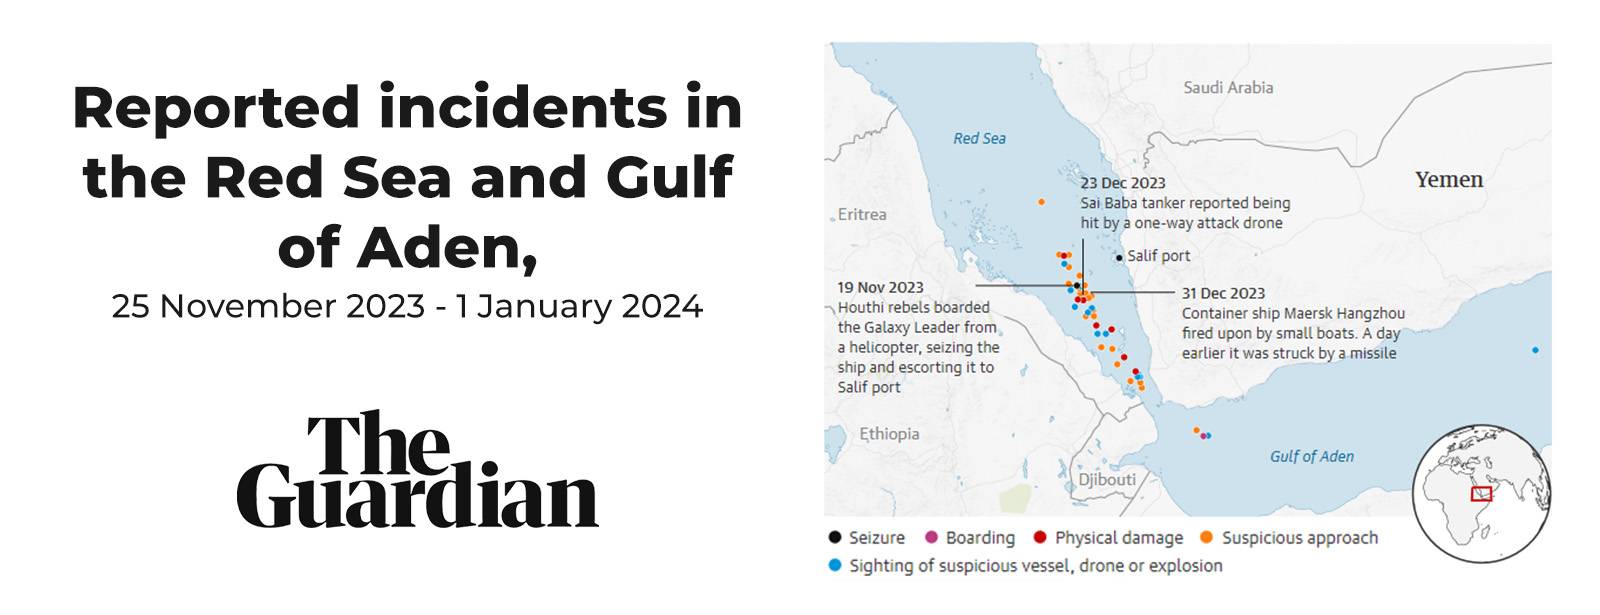 Prijavljeni incidenti v Rdečem morju in Adenskem zalivu